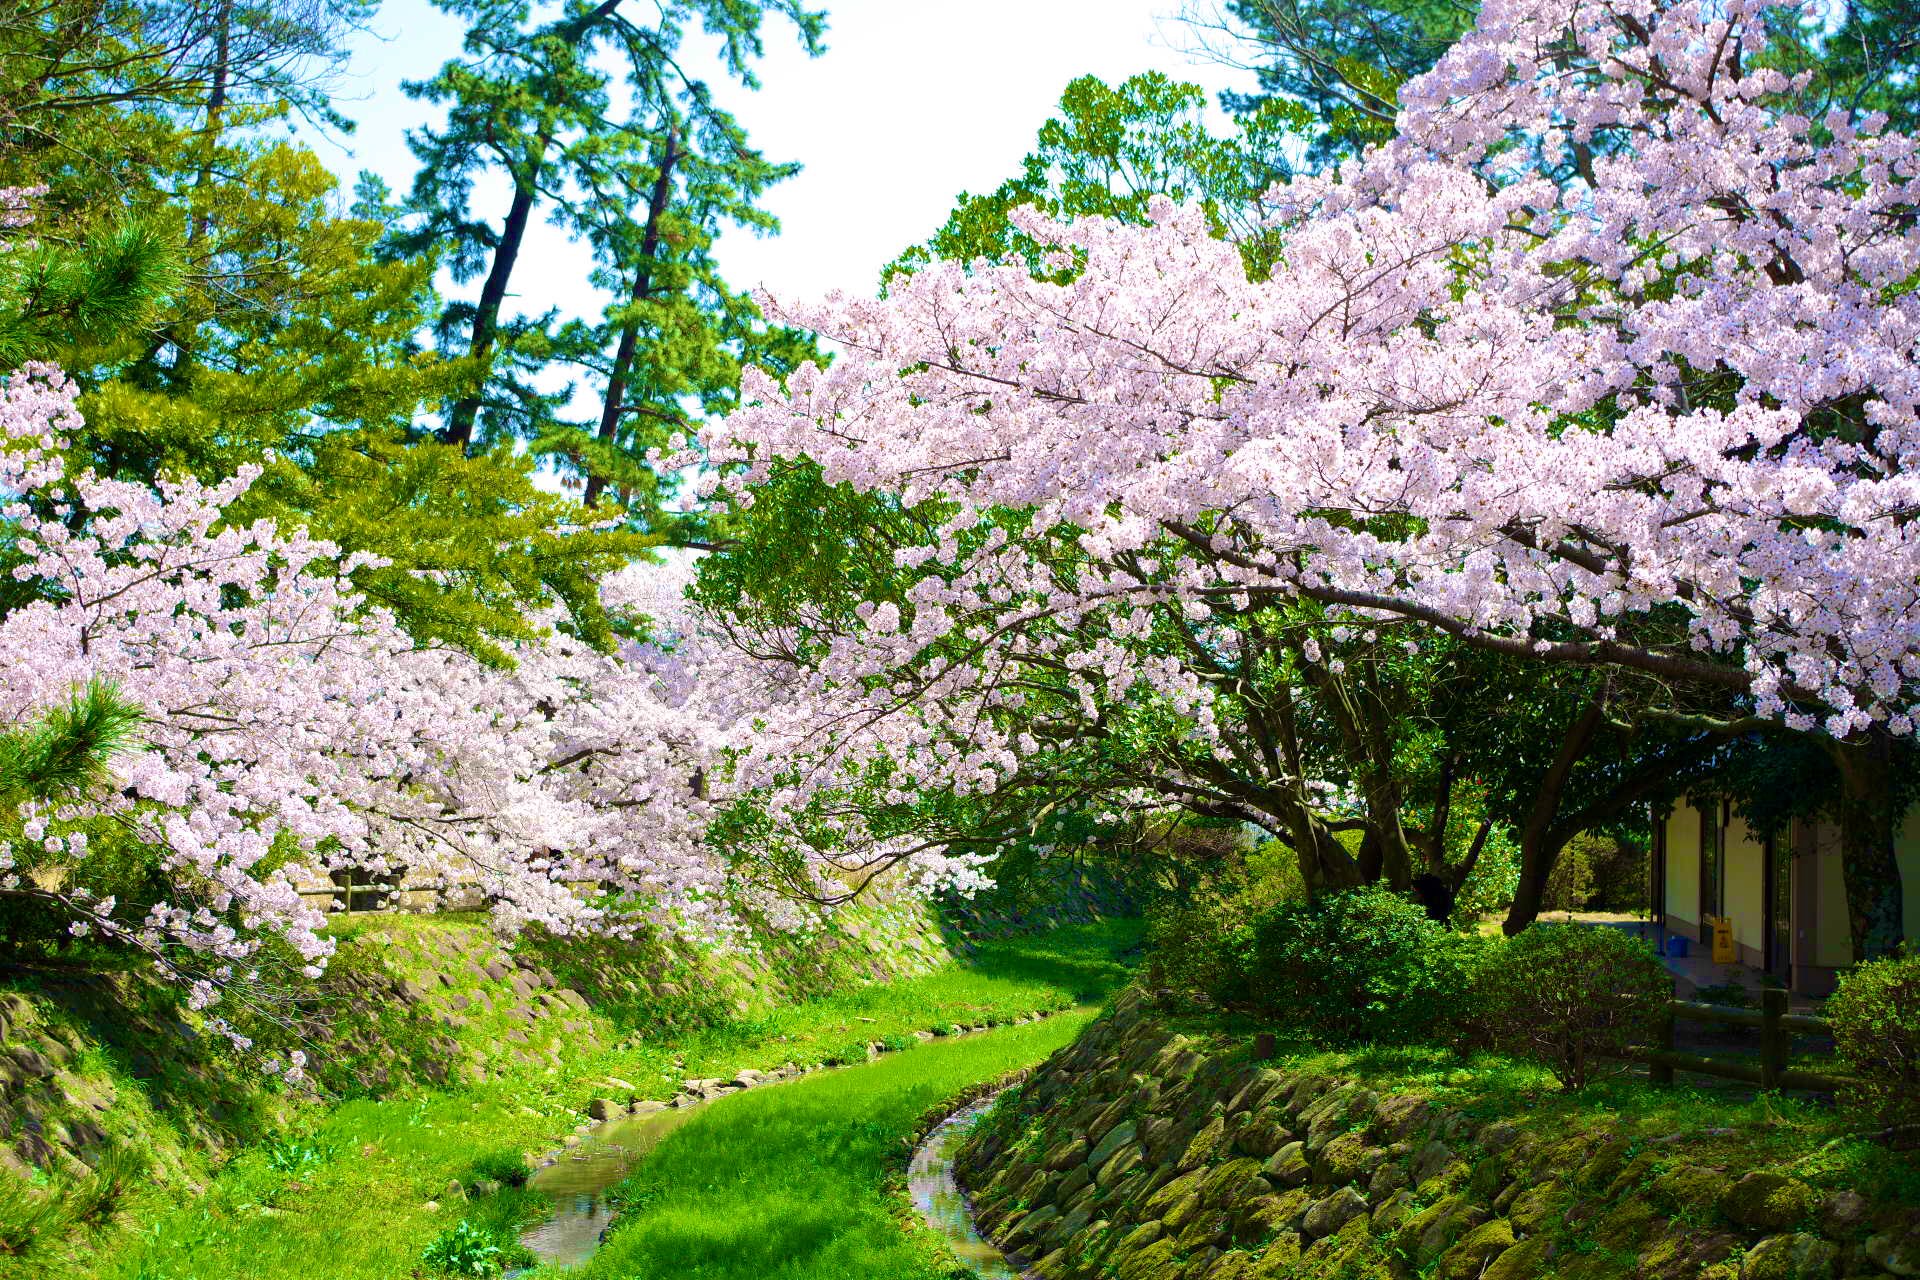 日比谷しまね館 本日は出雲大社神苑の桜をご紹介します 出雲大社神苑といえば 緑の美しい場所ですが 桜の季節は緑とピンクの色合いがとても美しいのです また うさぎ達と桜の組み合わせも可愛らしいですよ 春休みの旅行は島根県へぜひどうぞ